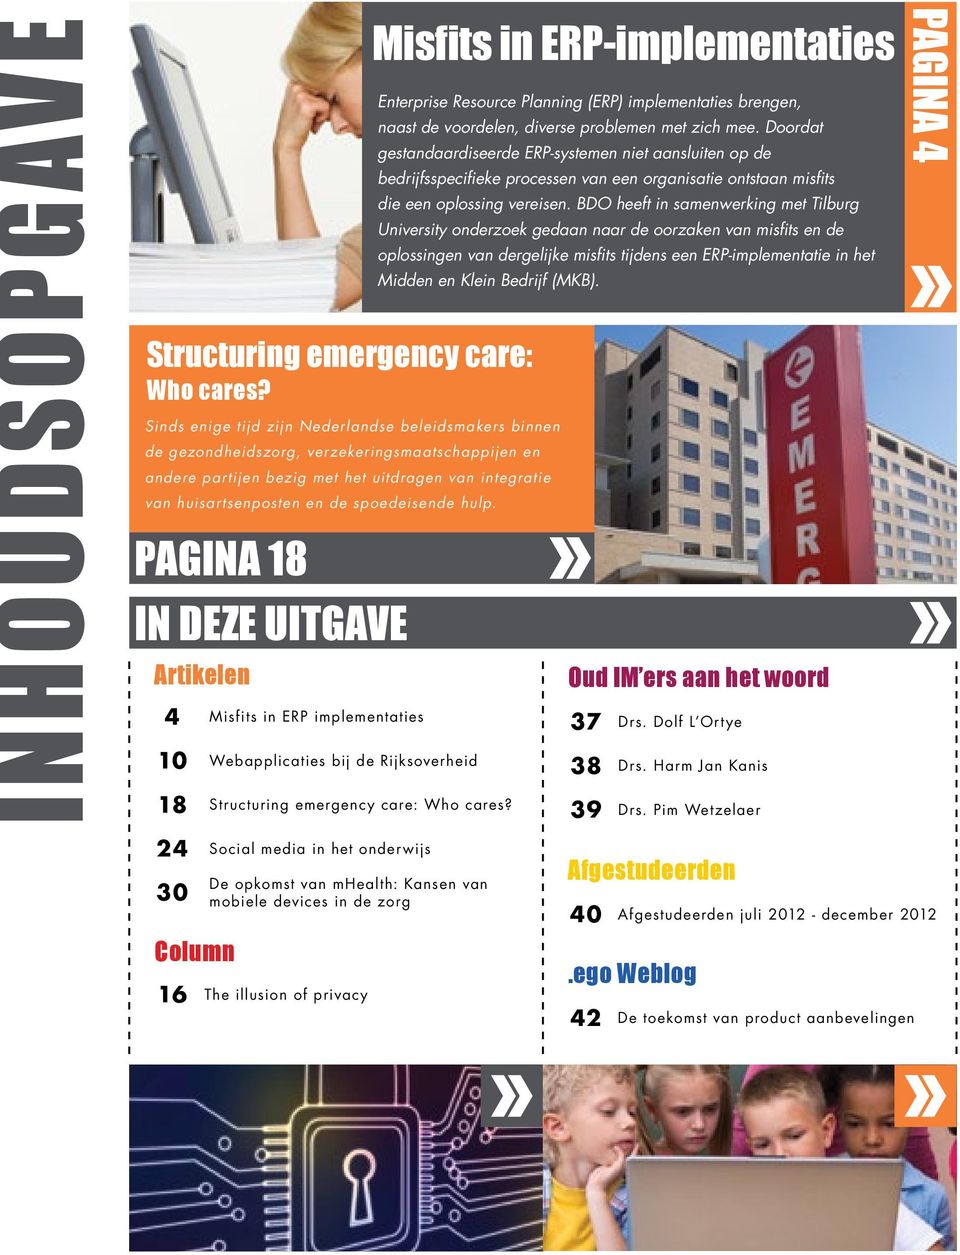 hulp. Pagina 18 IN Deze uitgave Artikelen 4 Misfits in ERP implementaties 10 Webapplicaties bij de Rijksoverheid 18 Structuring emergency care: Who cares?